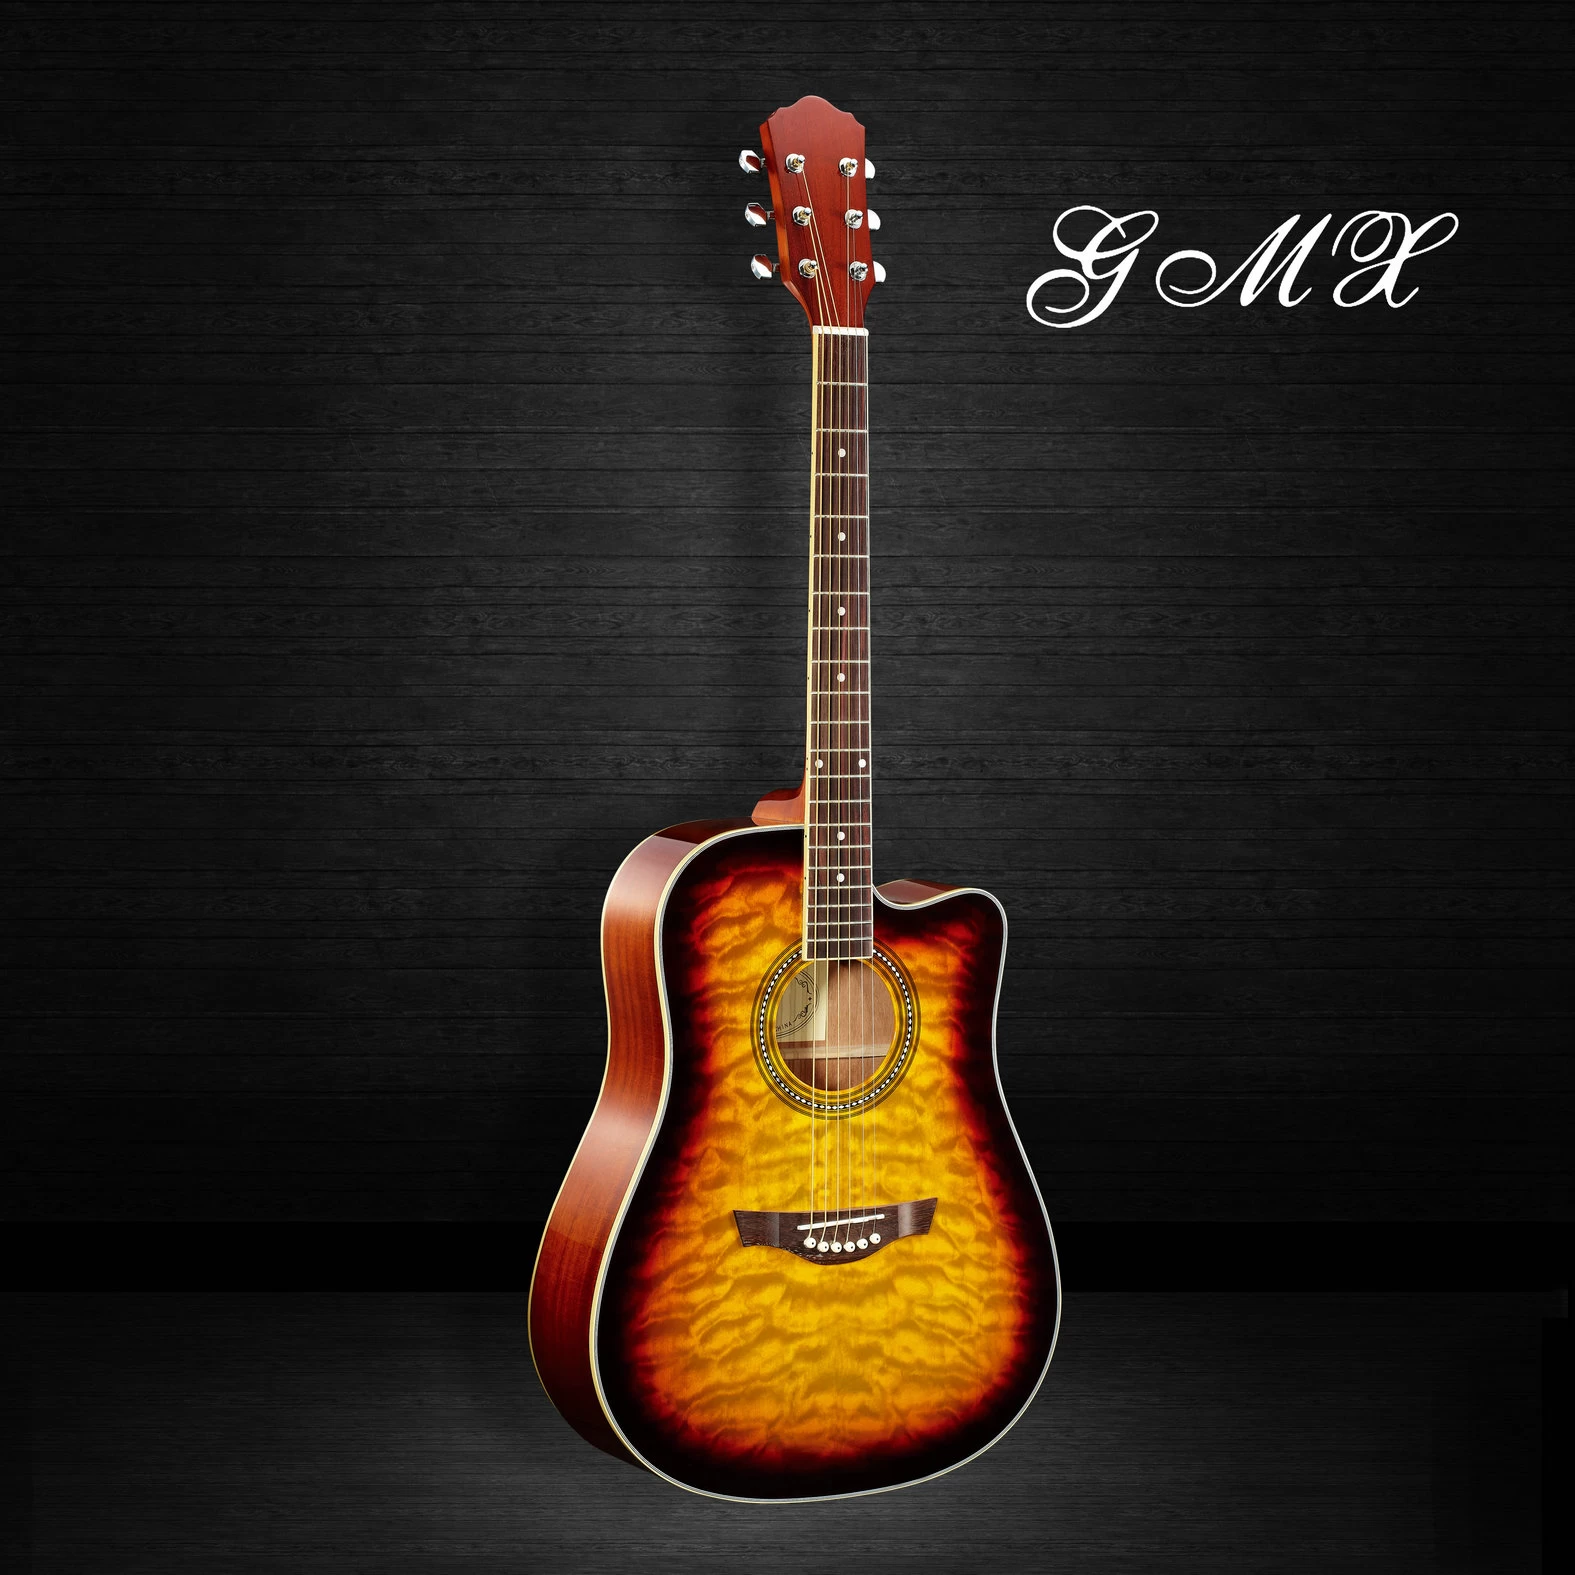 Laminated mahogany back side stylish modern student fancy acoustic guitar